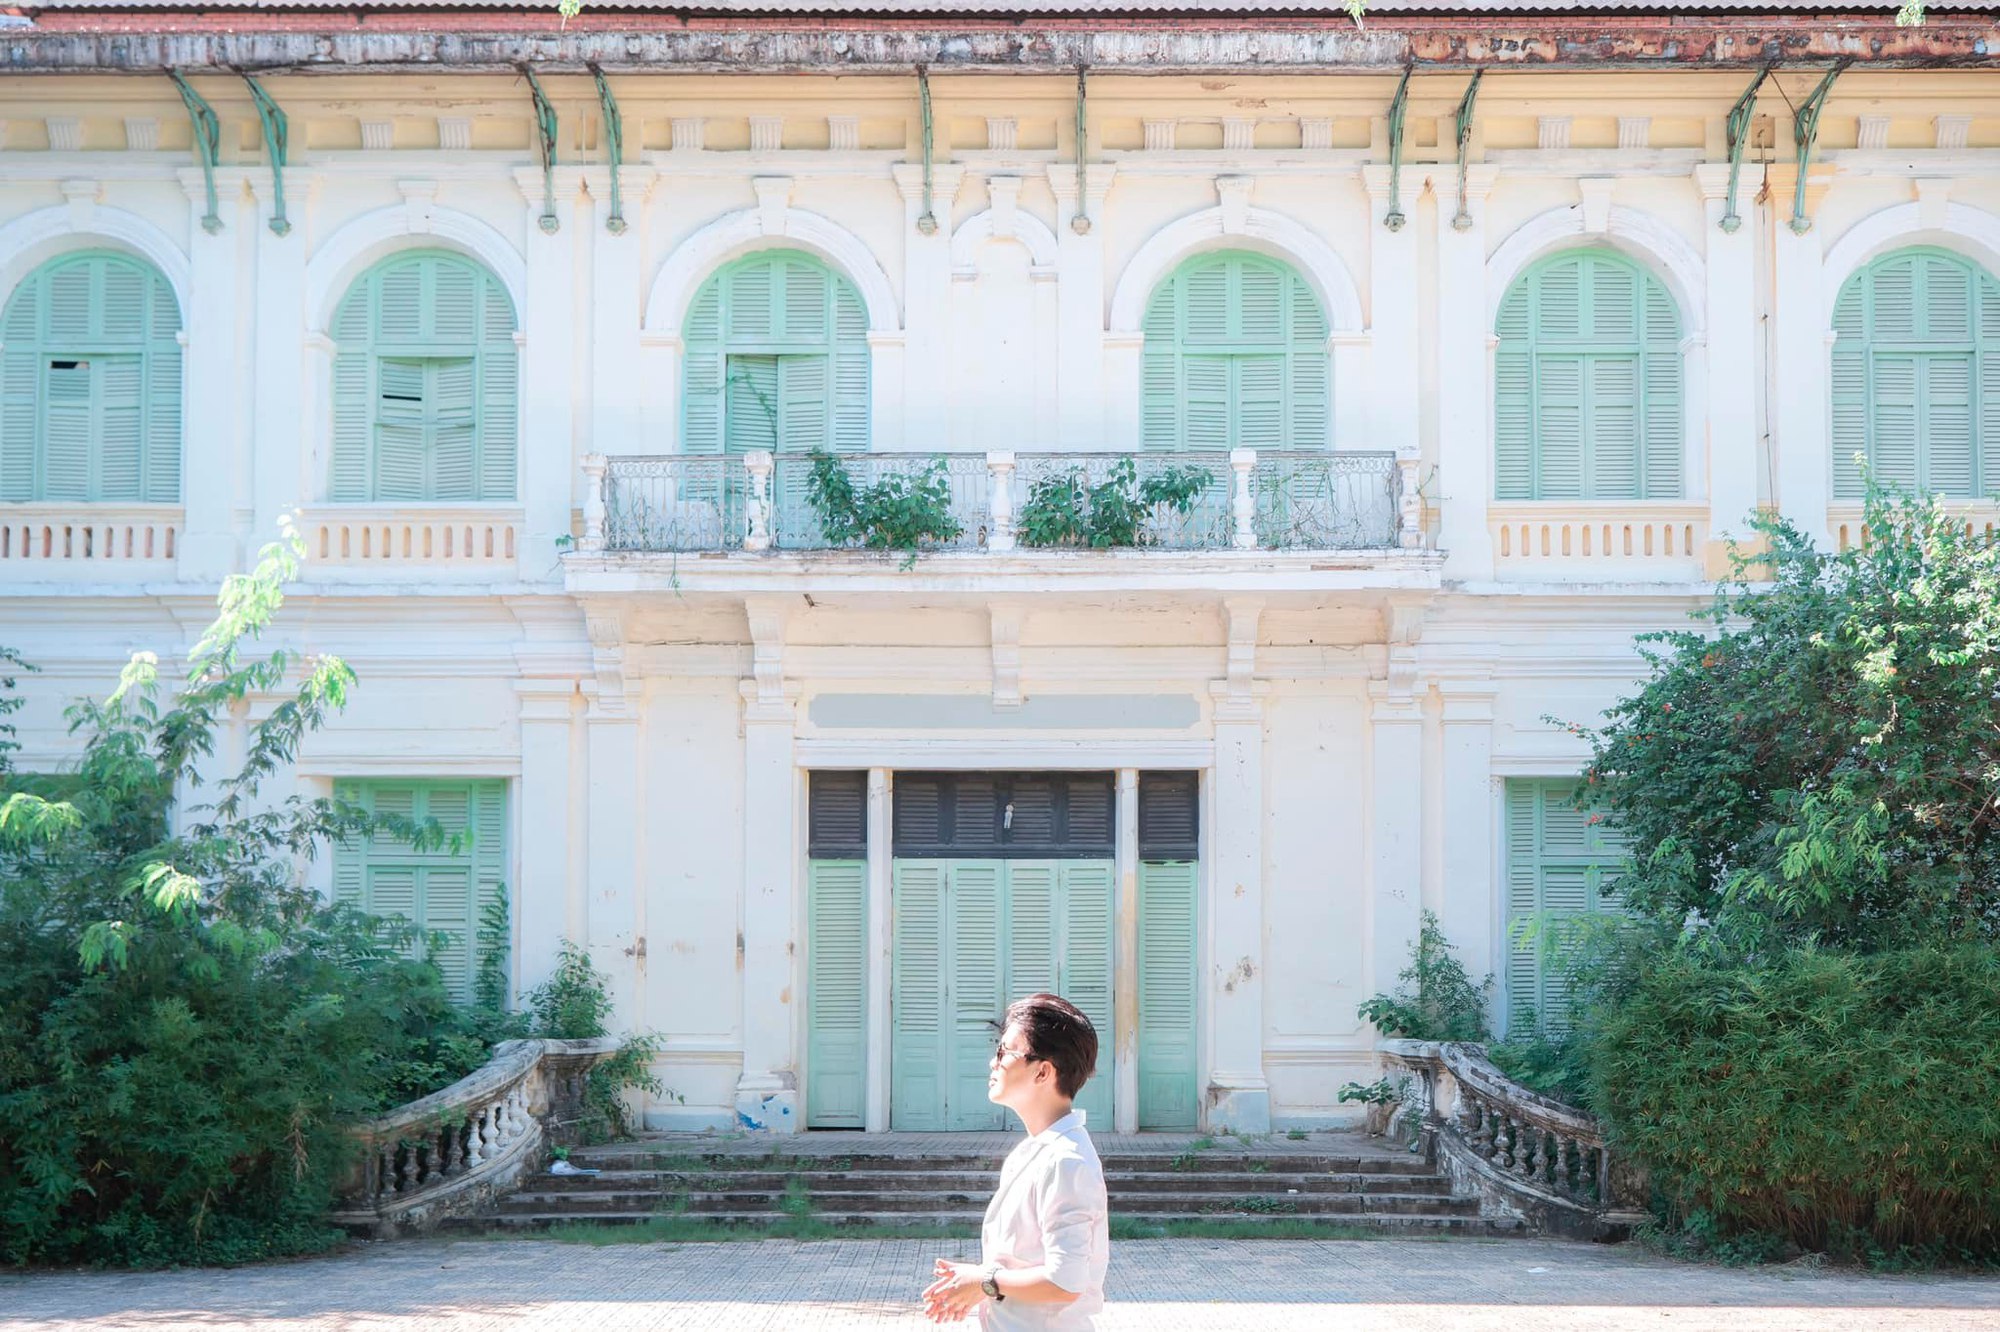 Du khách đến Tiền Giang chuộng khám phá các ngôi nhà cổ mang đậm giá trị lịch sử - văn hoá - ảnh 12